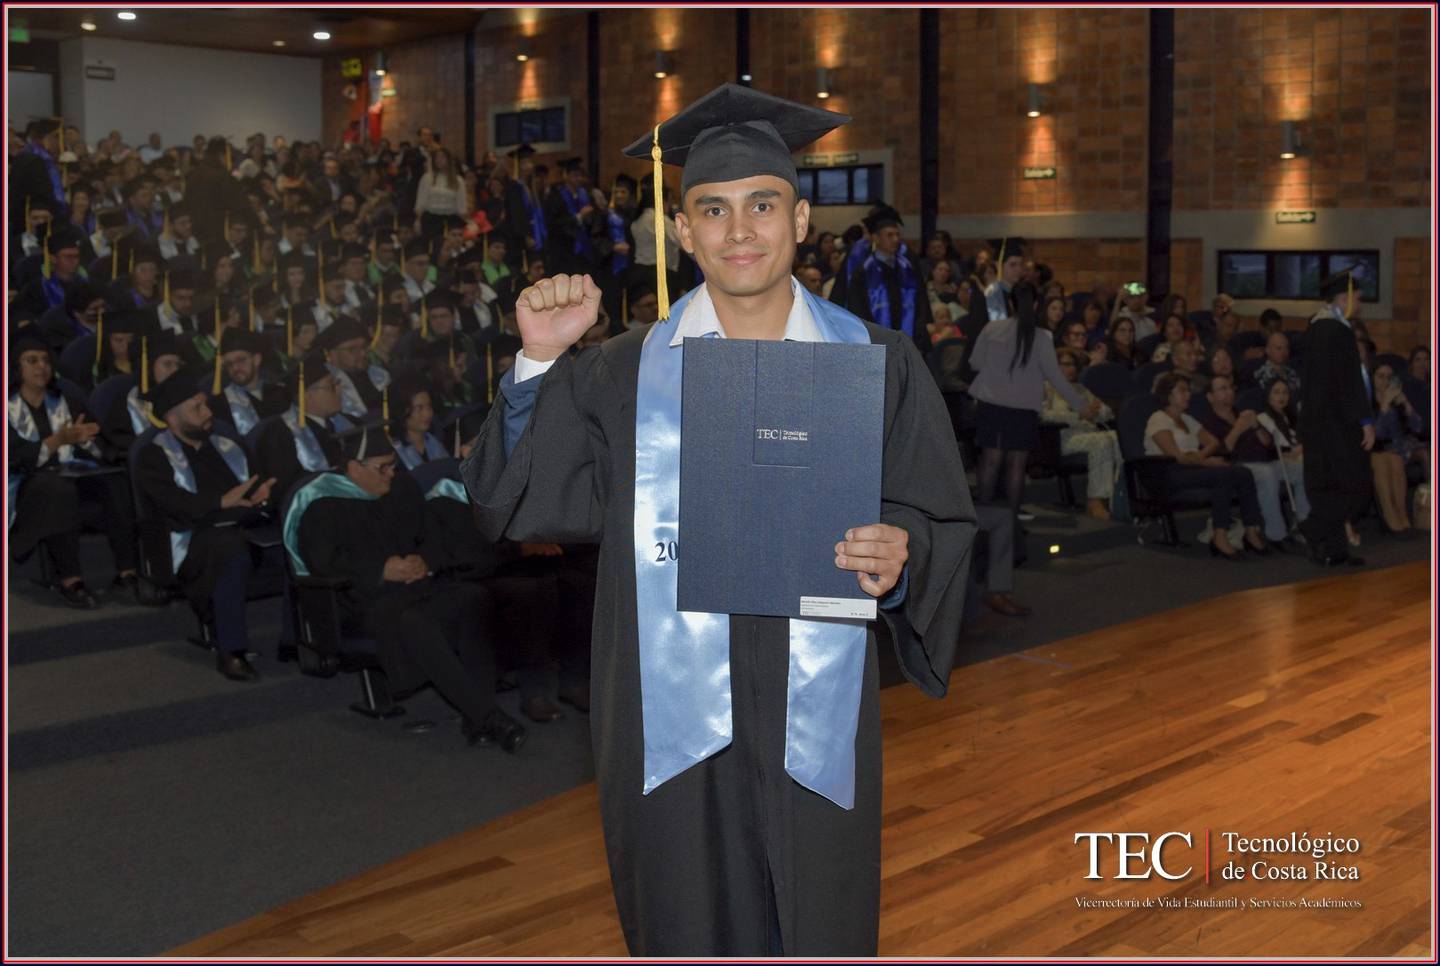 Moisés Salguero Morales se graduó el 21 de junio como licenciado en ingeniería en mecatrónica del TEC. Cuenta que es el segundo indígena en graduarse como ingeniero en mecatrónica en Costa Rica. Foto: Moisés Morales para LN